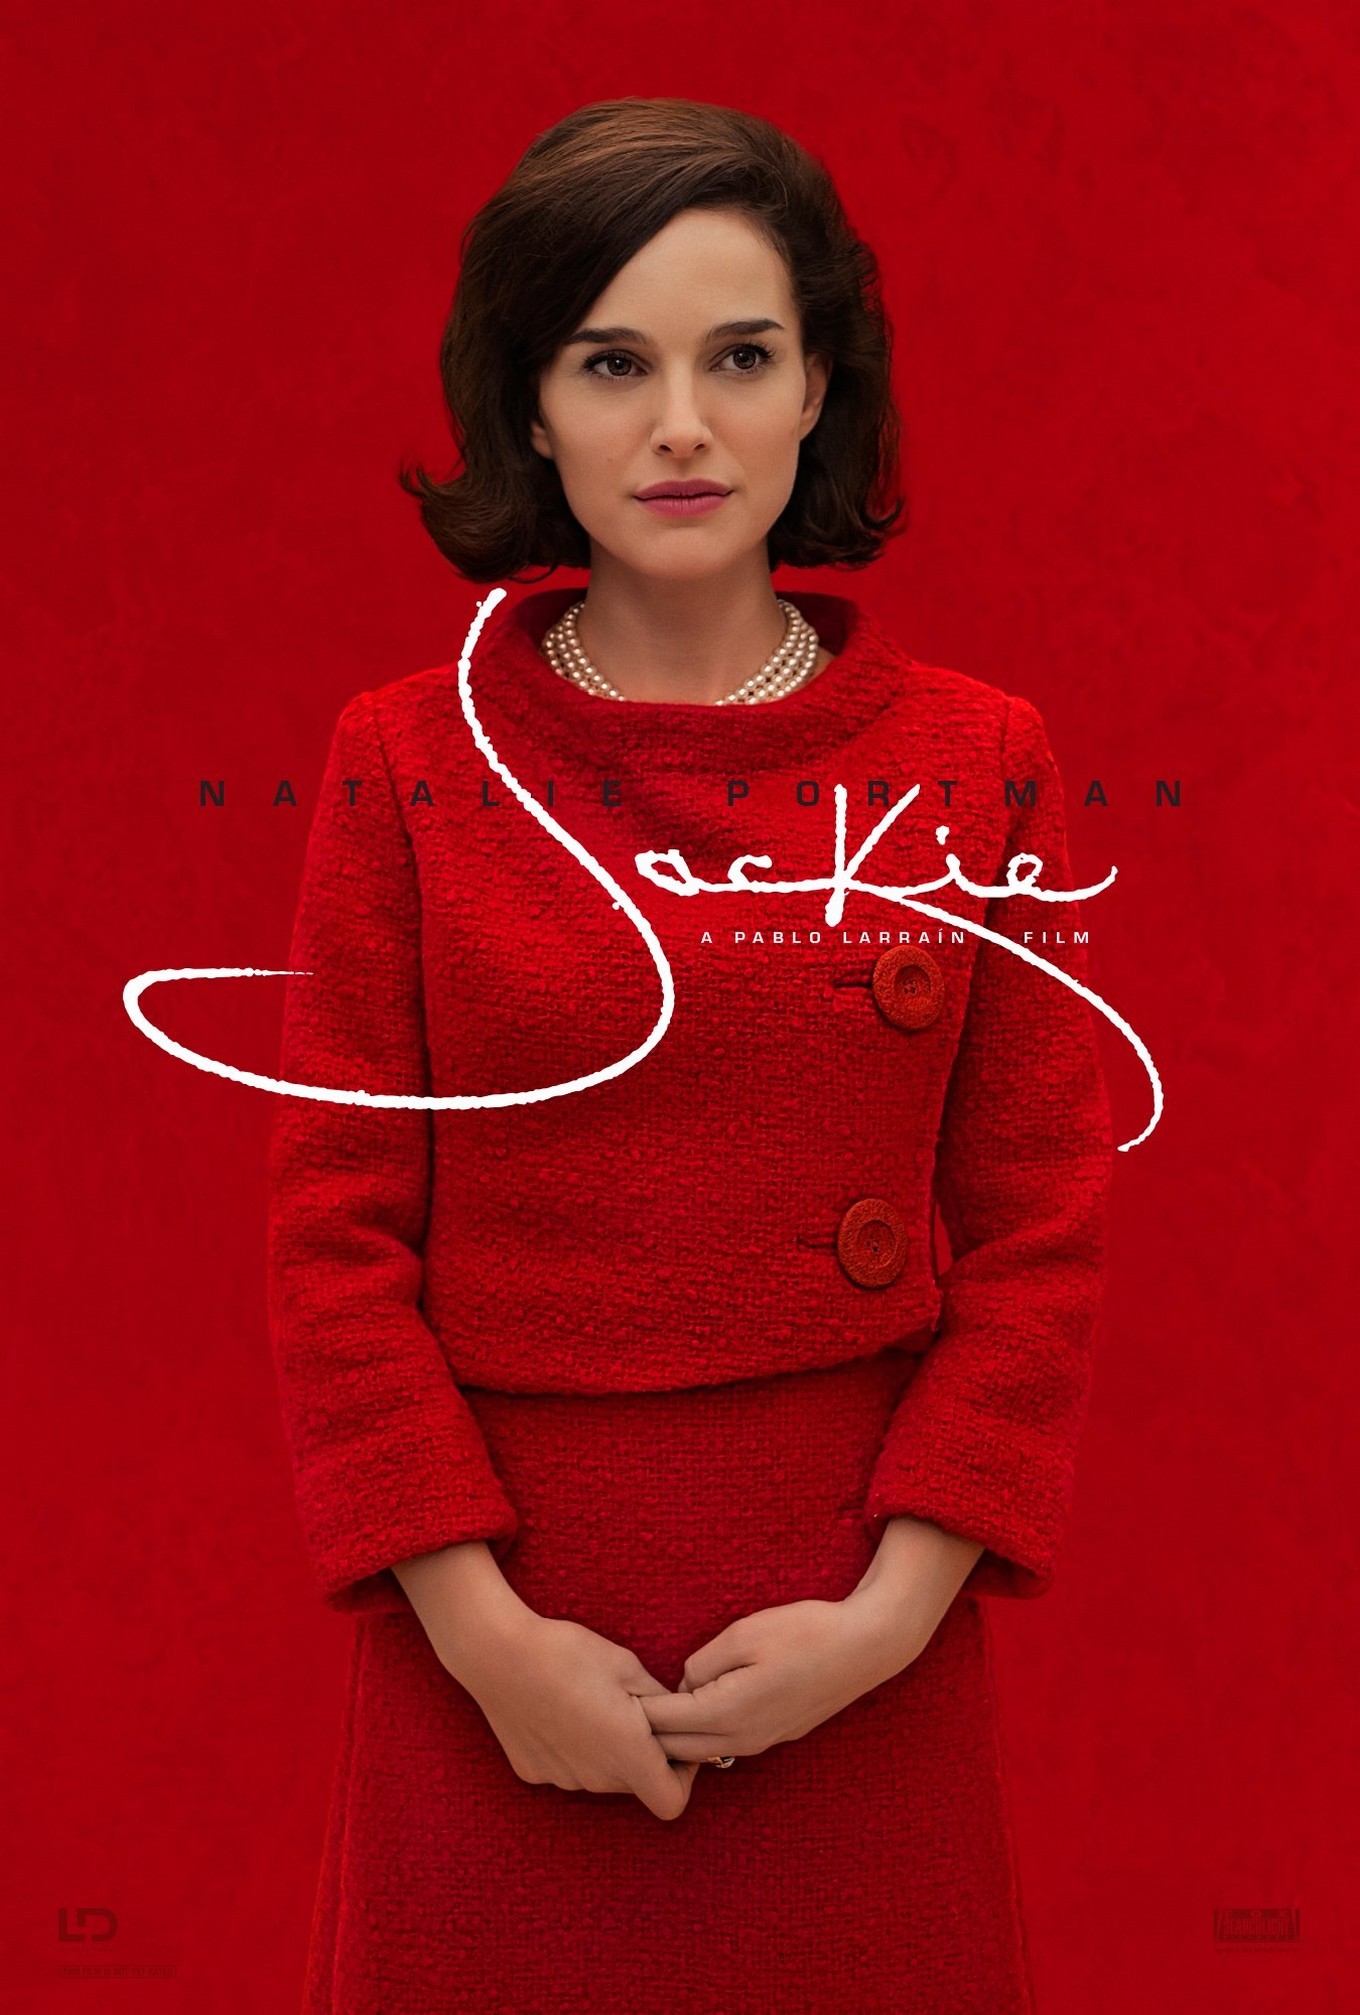 Natalie Portman: Jackie | Pablo Larraín, 2016 / Movie Poster / Affiche du film